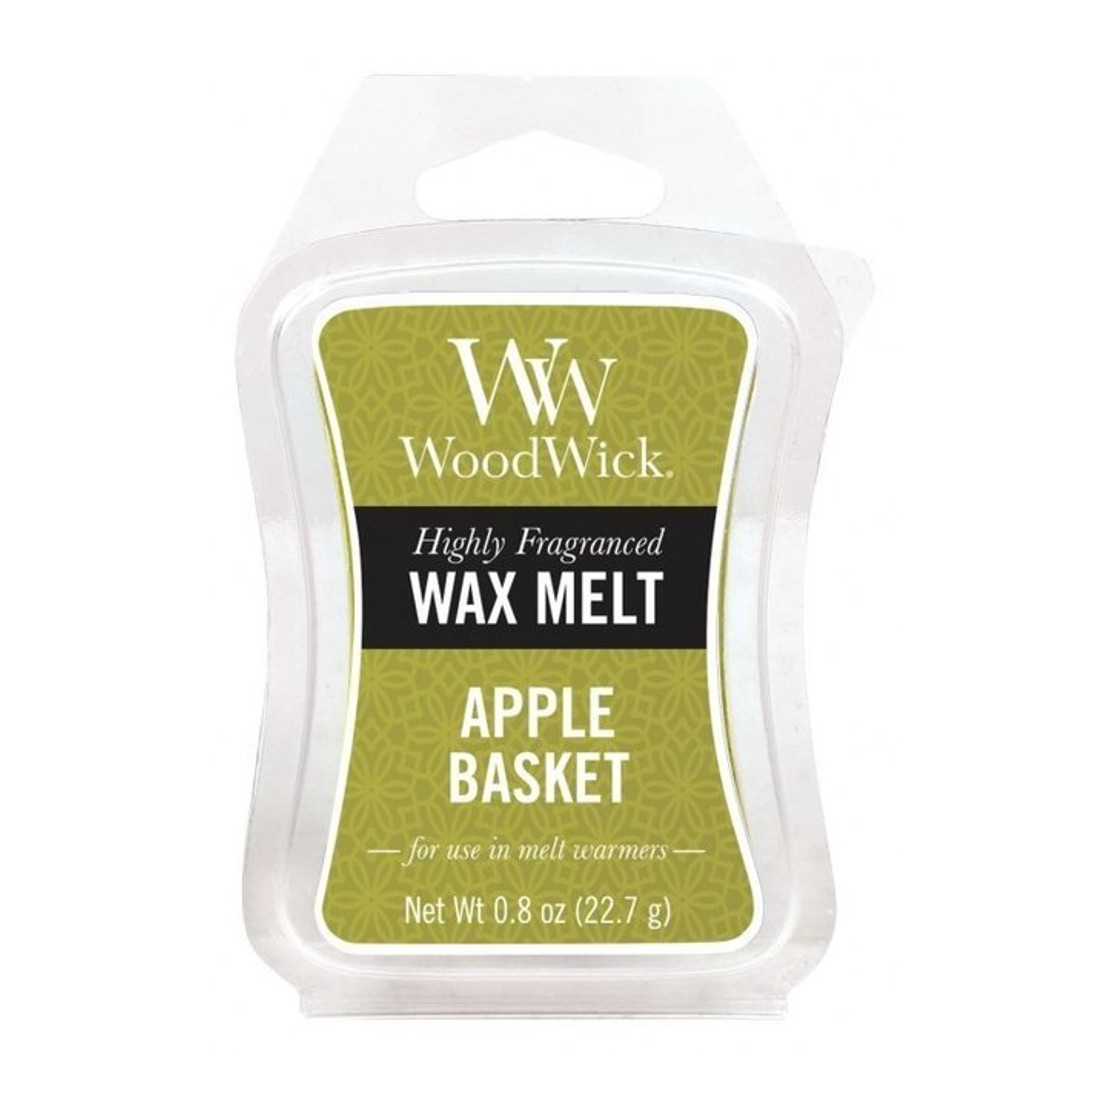 Woodwick Apple Basket Wax Melt